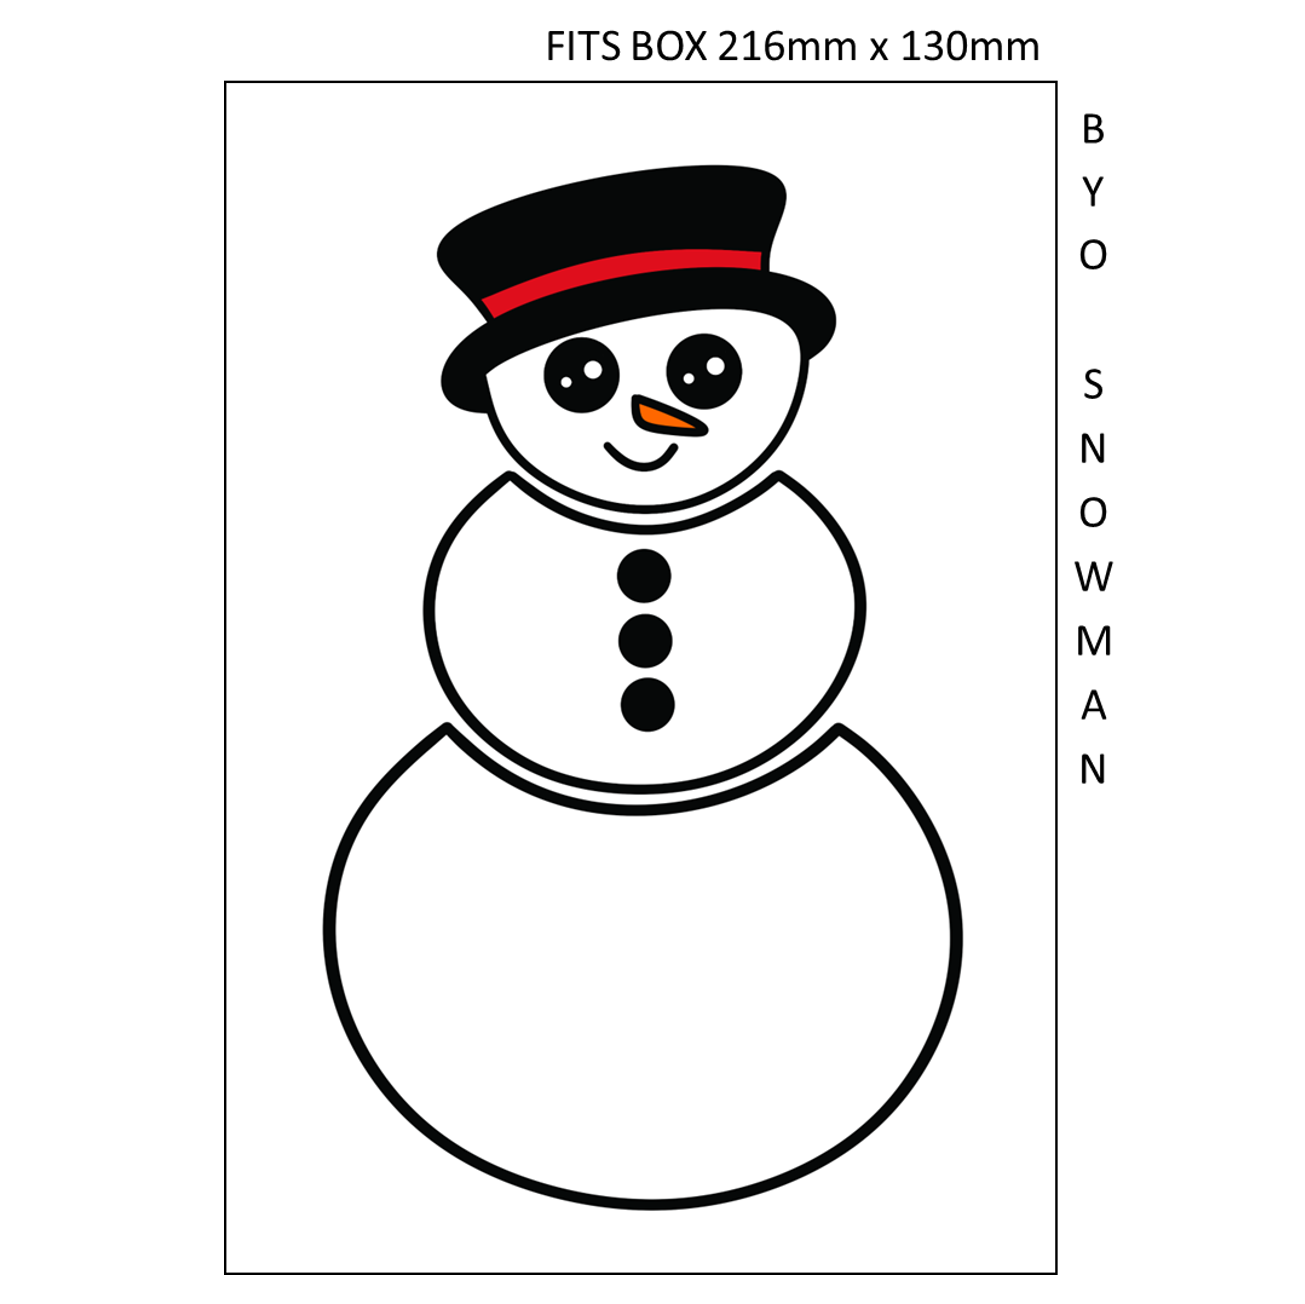 JBS0100 - BYO Snowman